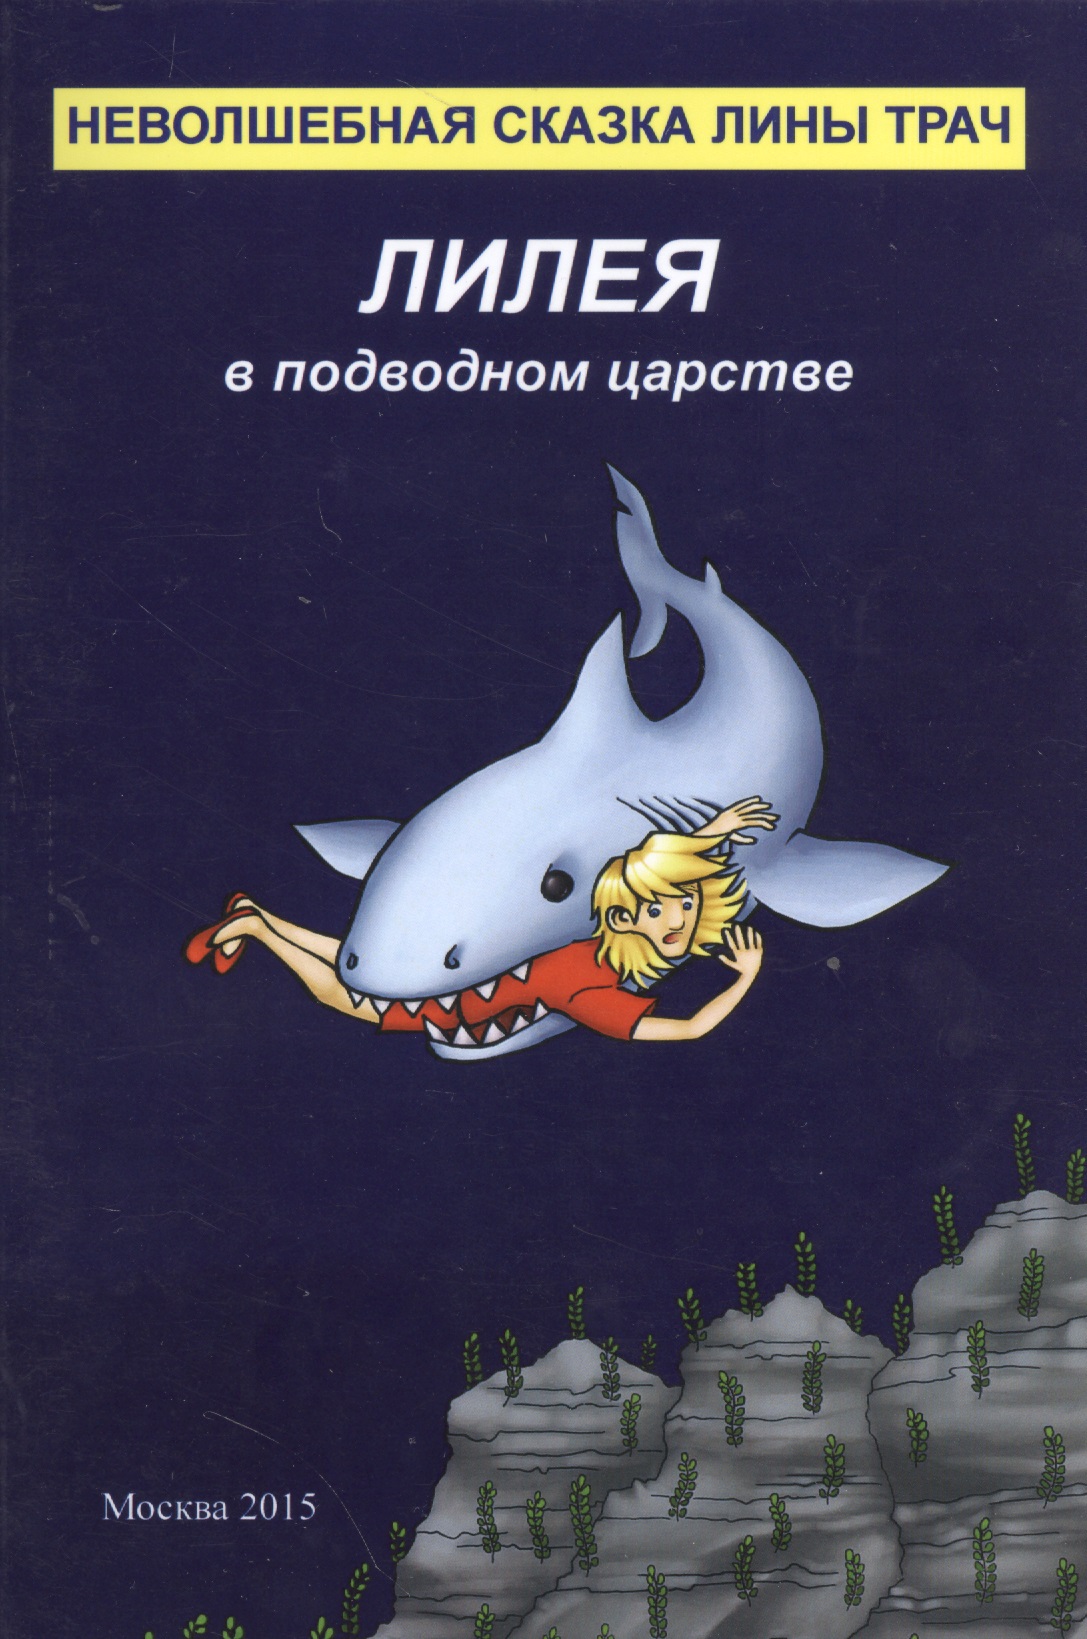 русские сказки садко в подводном царстве Лилея в подводном царстве